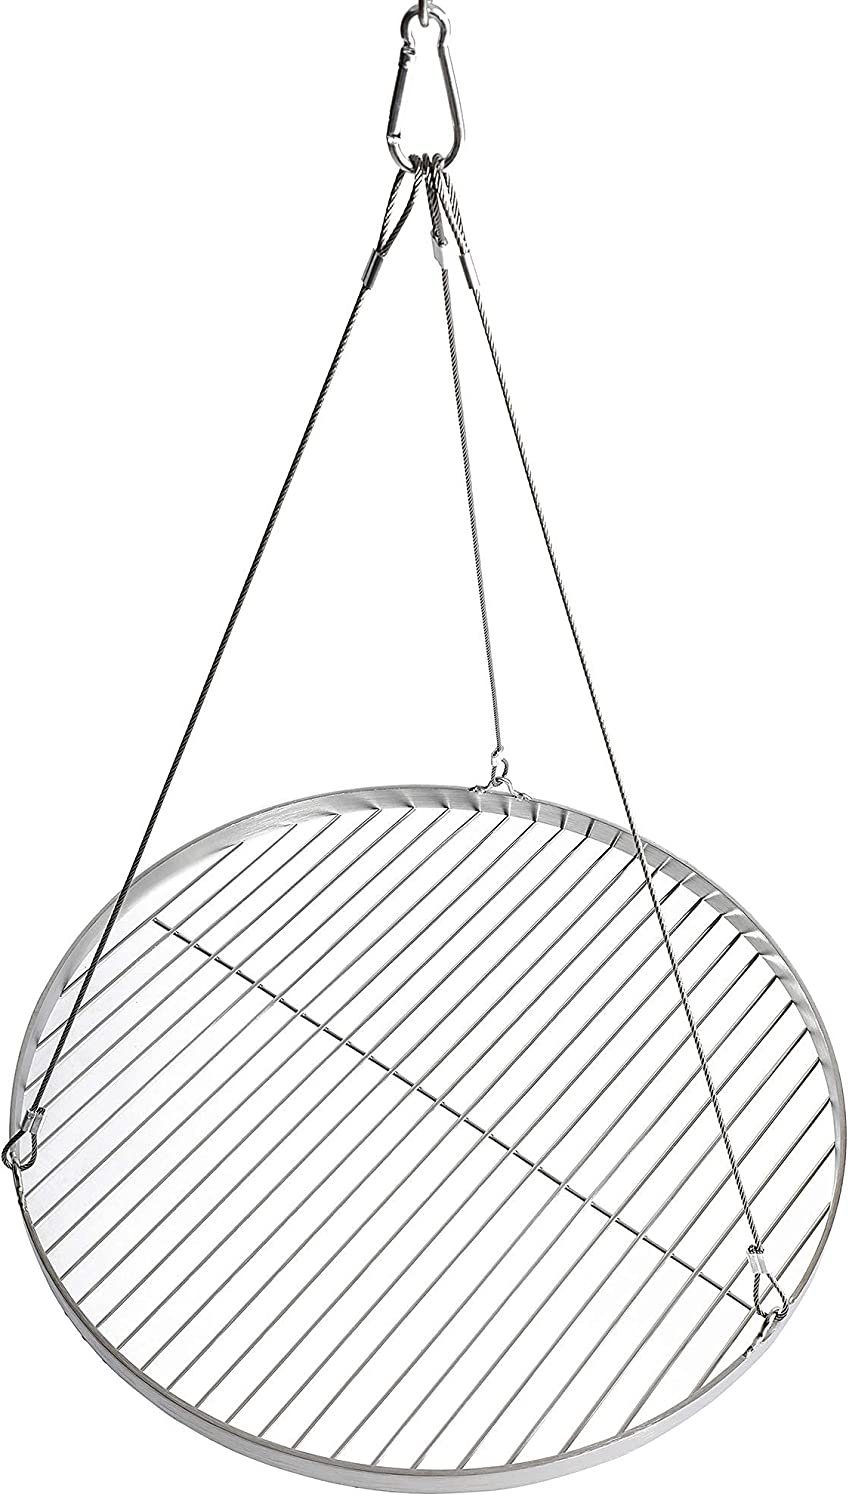 DRULINE Grillplatte Grillrost rund, Edelstahl, 70 cm Durchmesser